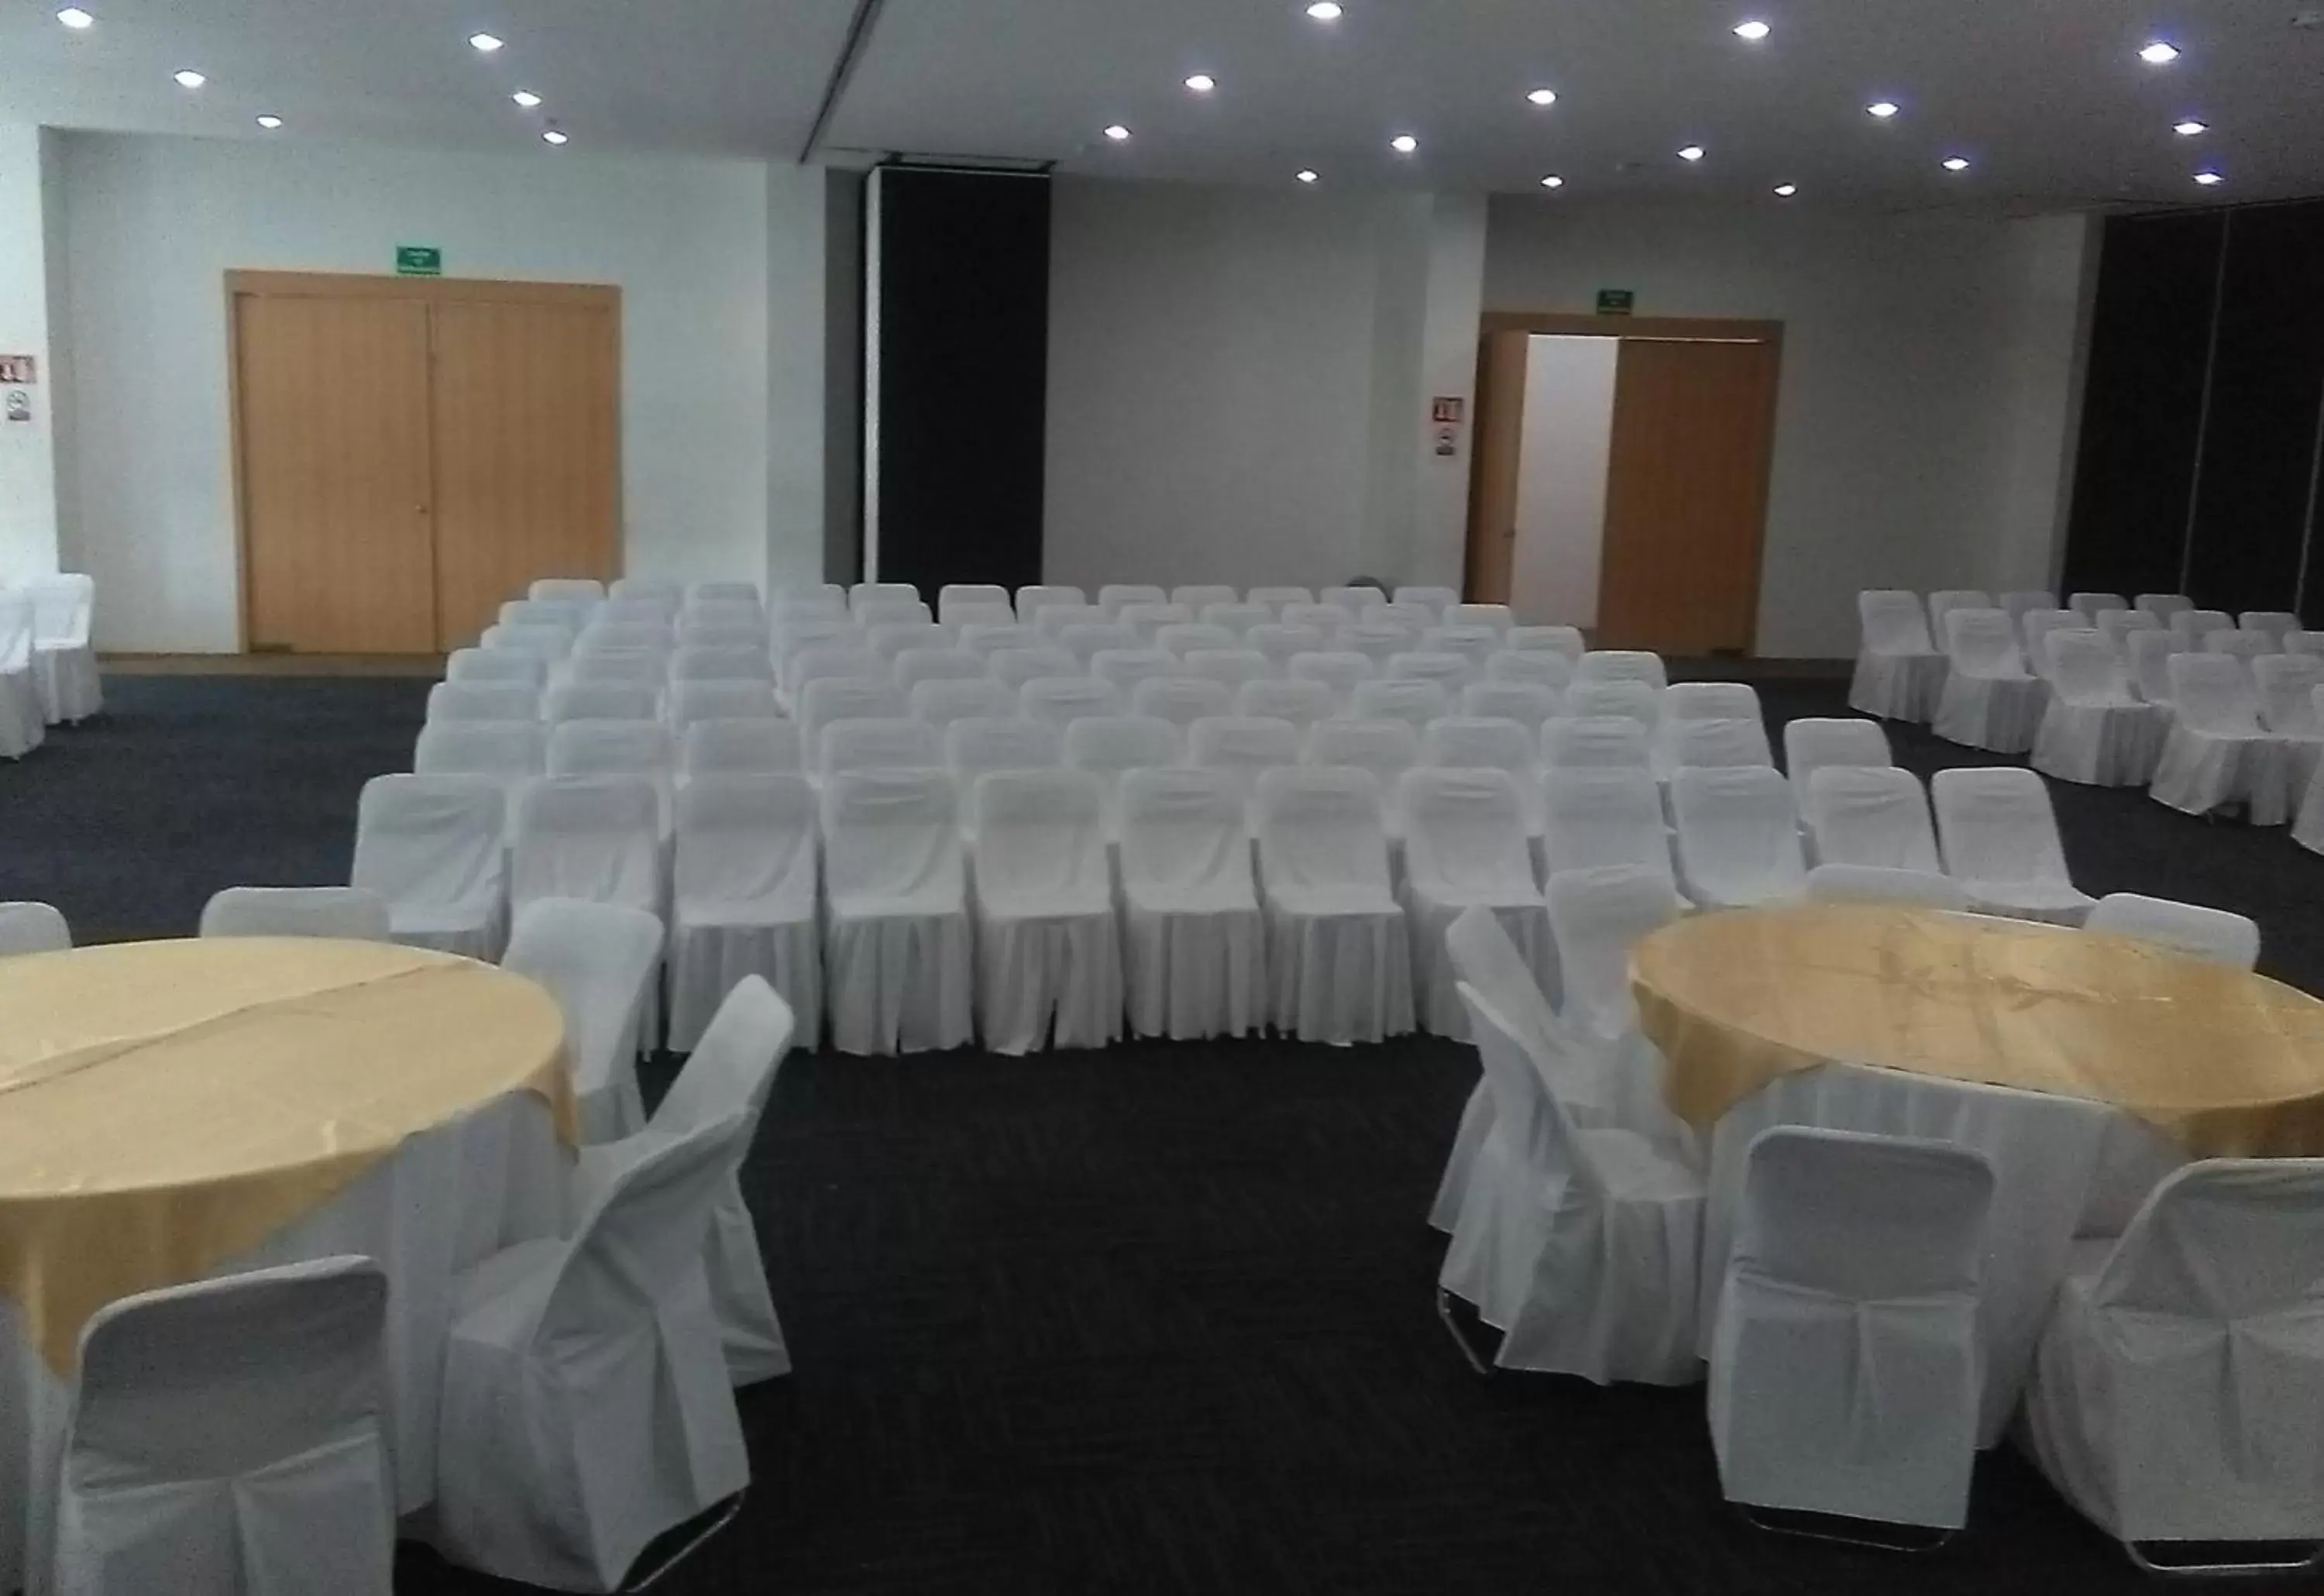 Meeting/conference room, Banquet Facilities in Sleep Inn Tuxtla